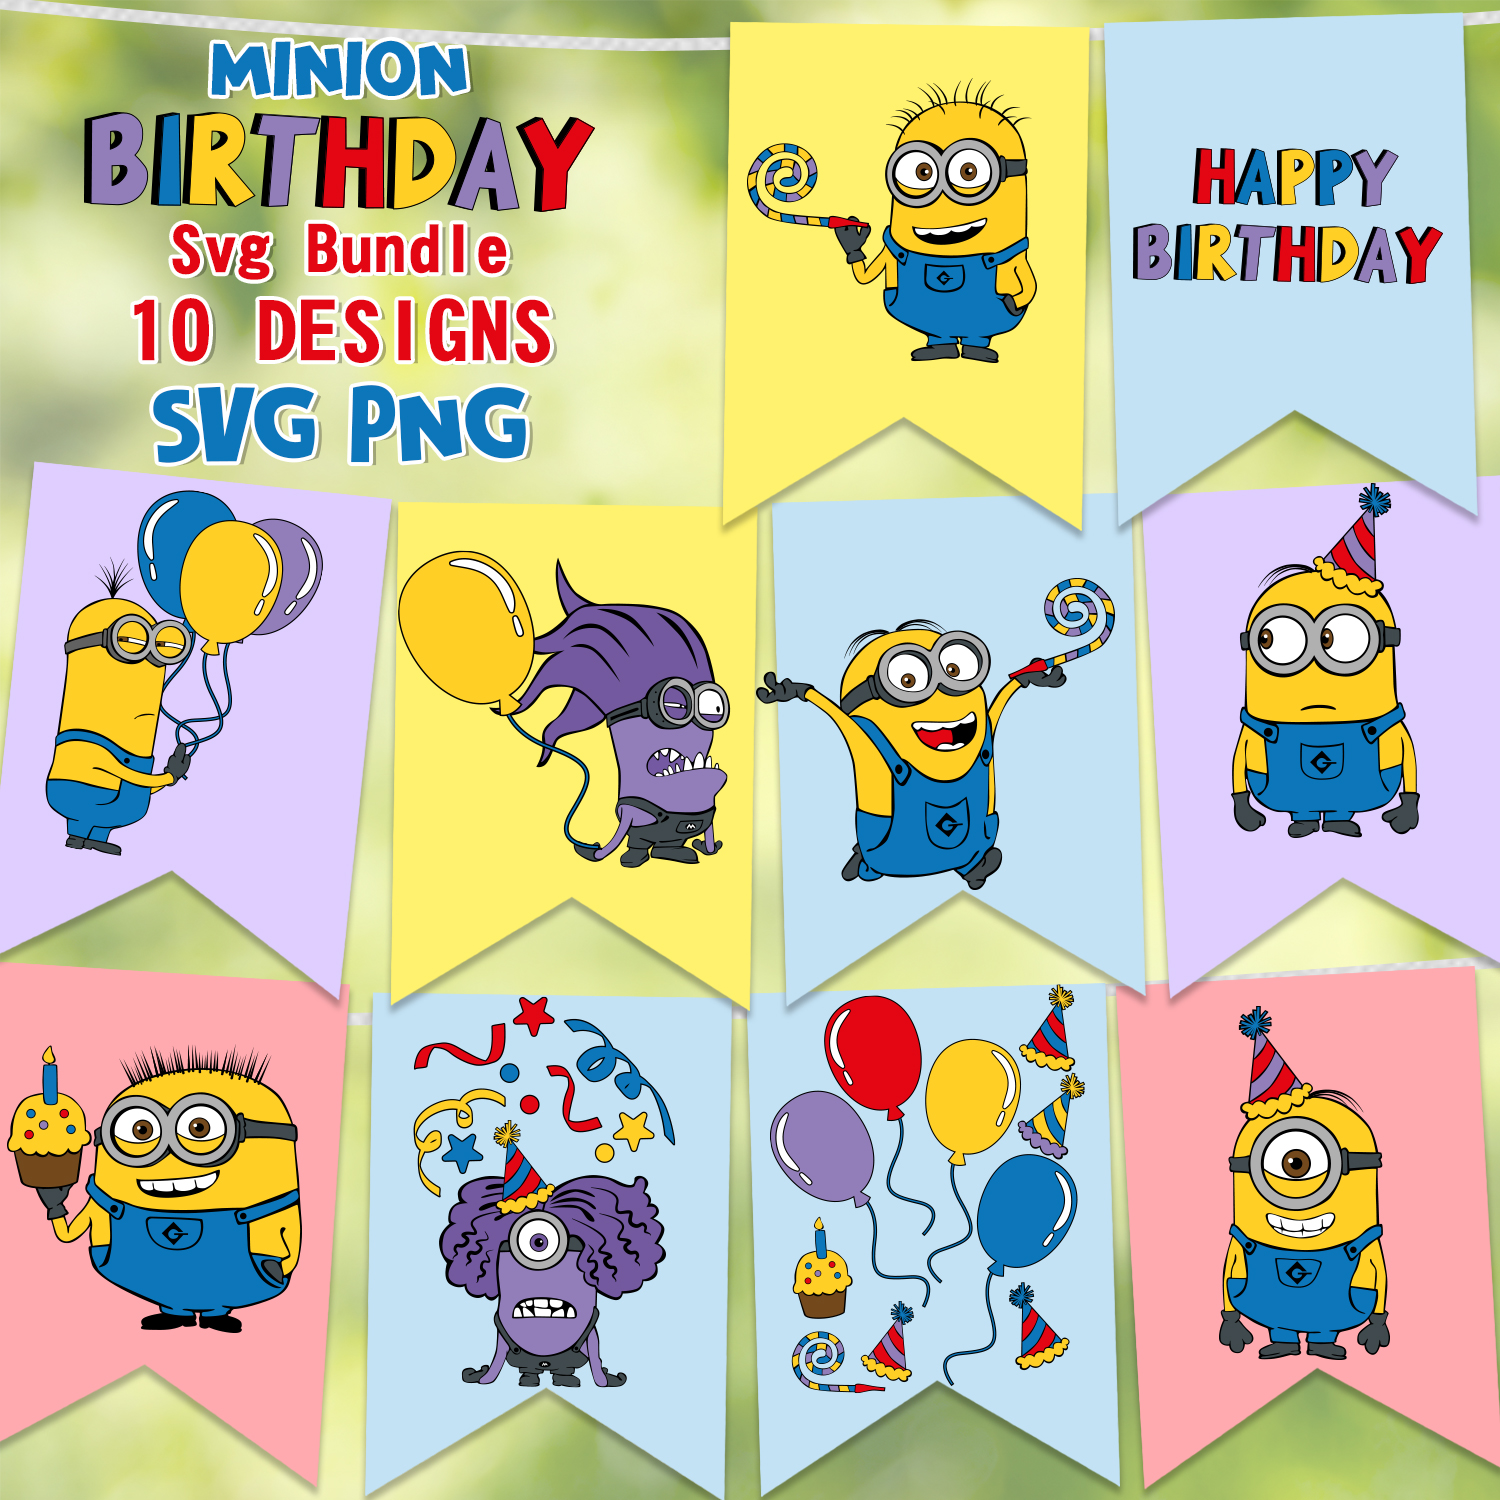 Unique prints on a unique theme minion birthday.